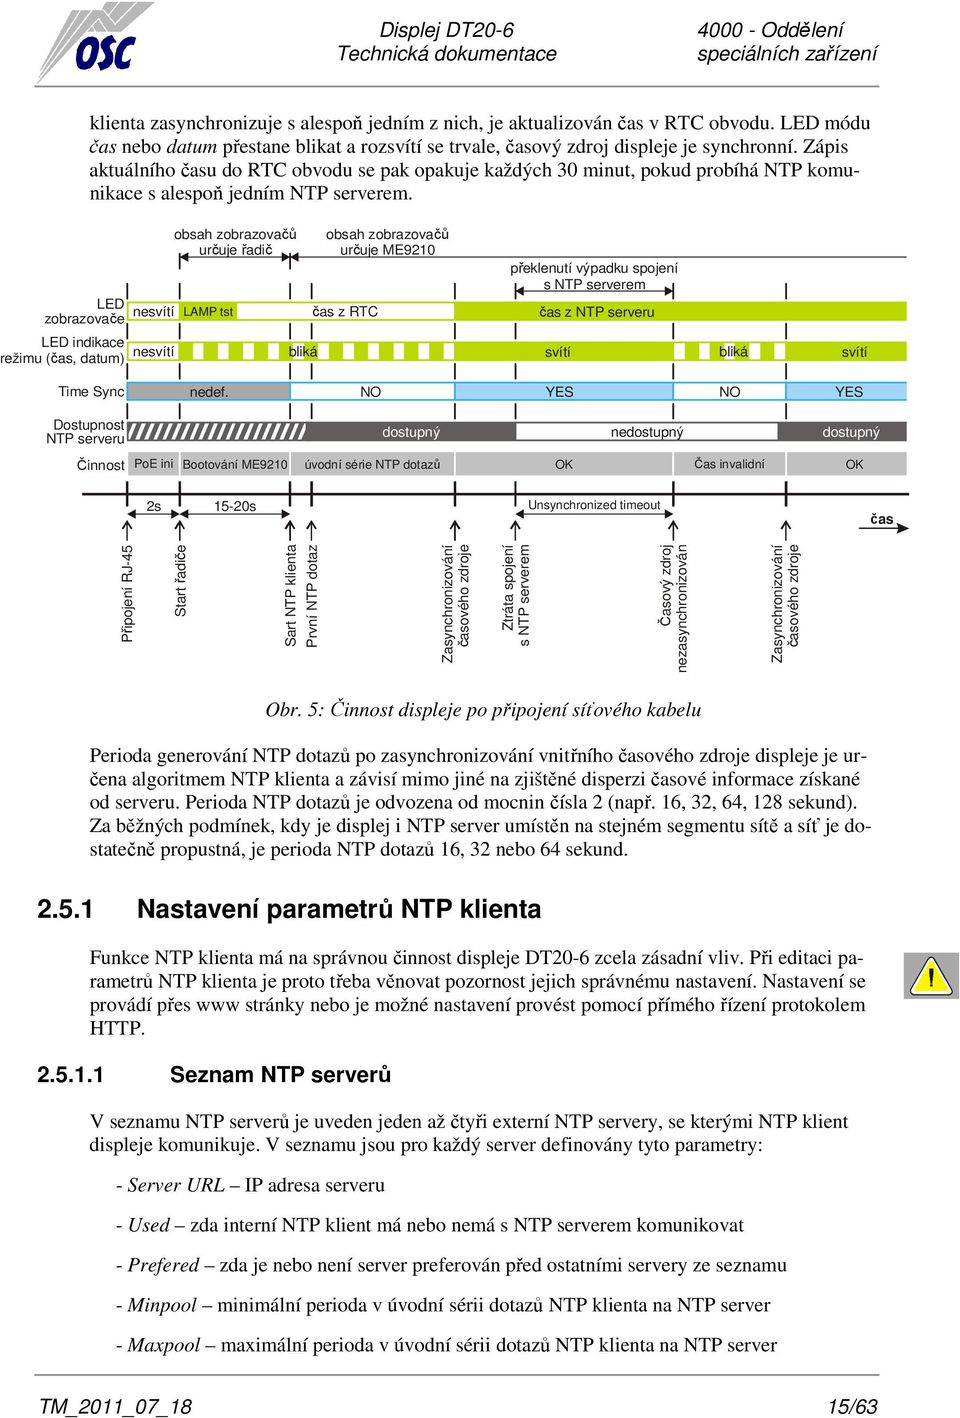 LED zobrazovače nesvítí obsah zobrazovačů určuje řadič LAMP tst obsah zobrazovačů určuje ME9210 čas z RTC překlenutí výpadku spojení s NTP serverem čas z NTP serveru LED indikace režimu (čas, datum)